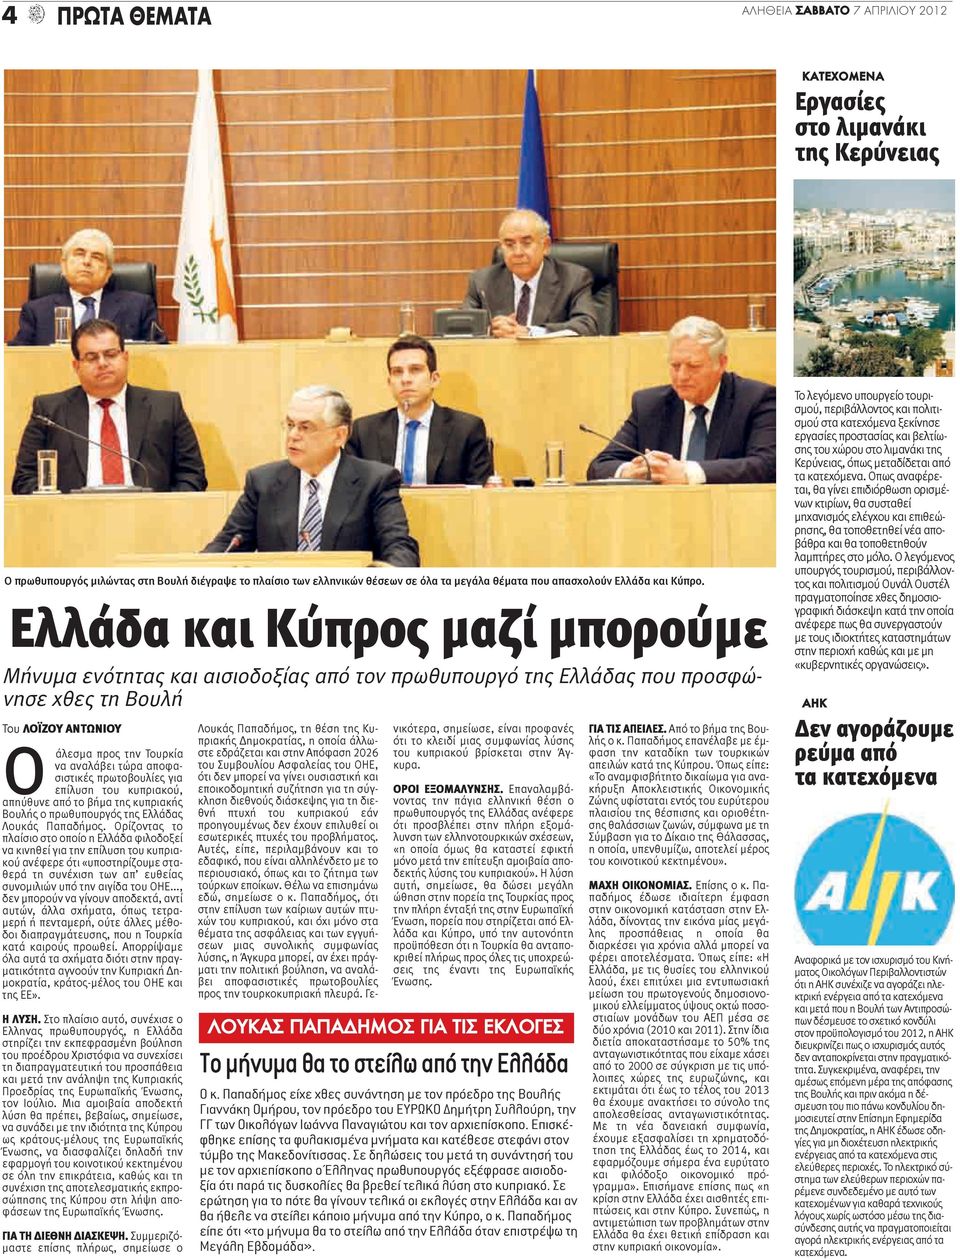 Ελλάδα και Κύπρος μαζί μπορούμε Μήνυμα ενότητας και αισιοδοξίας από τον πρωθυπουργό της Ελλάδας που προσφώνησε χθες τη Βουλή Του ΛΟΪΖΟΥ ΑΝΤΩΝΙΟΥ O άλεσμα προς την Τουρκία να αναλάβει τώρα